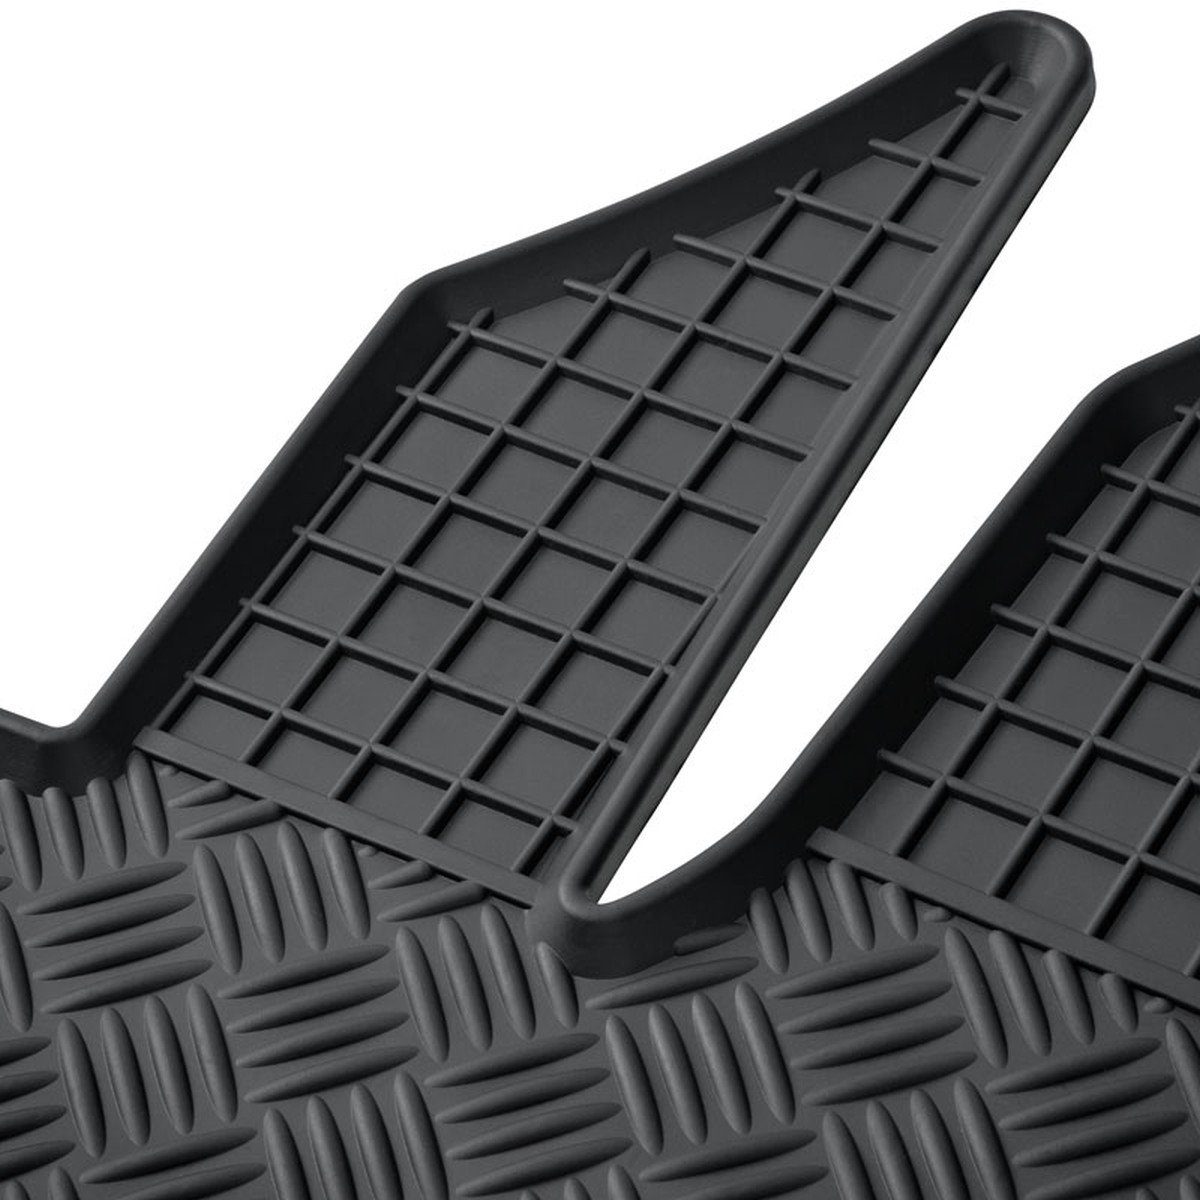 für AZUGA für Gummi-Fußmatten ab Ignis Suzuki Ignis Suzuki 2017, 5-türer Auto-Fußmatten passend